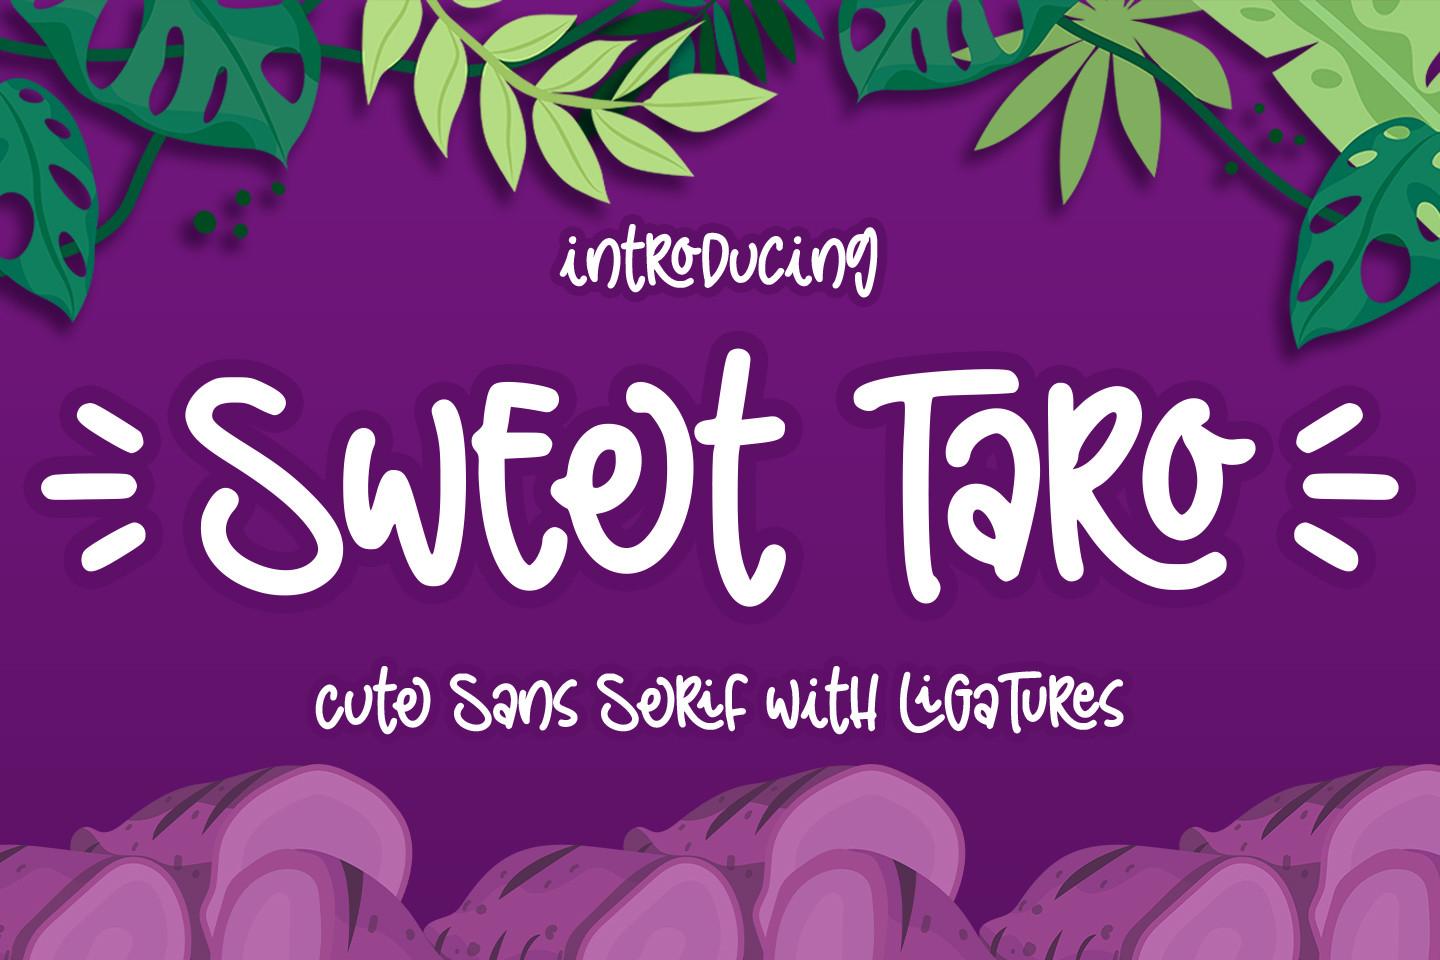 Sweet Taro Font